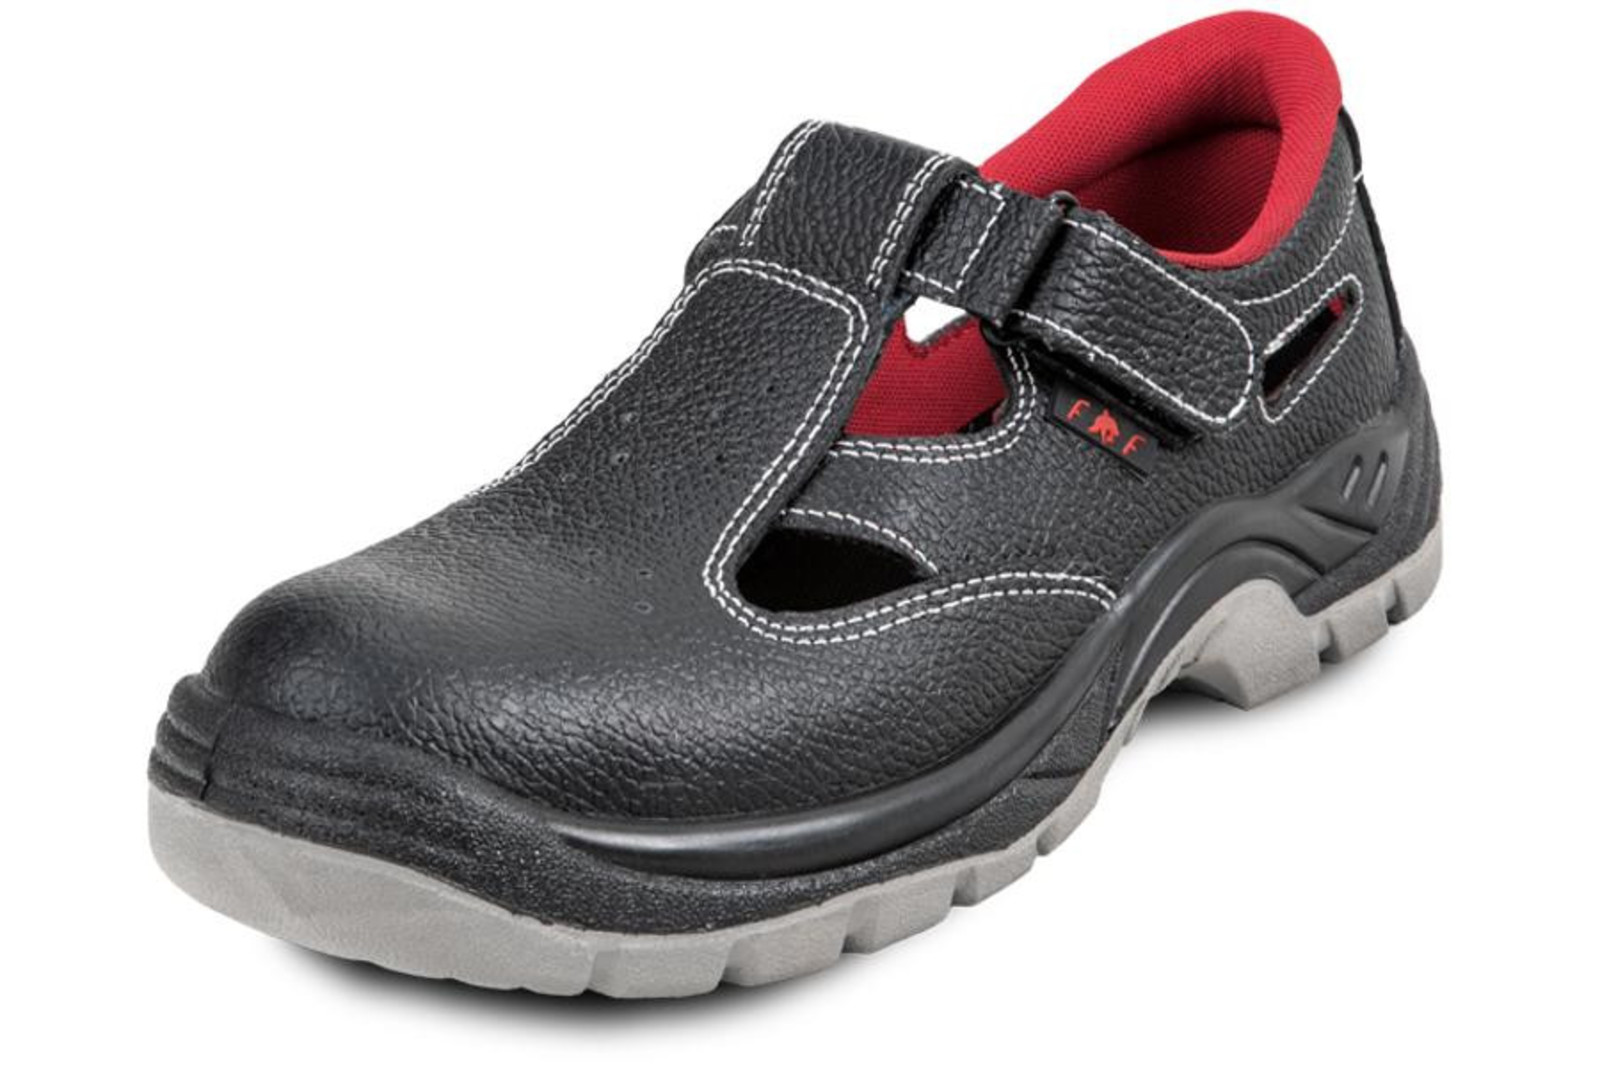 Pracovné sandále Bonn SC 01-002 O1 - veľkosť: 46, farba: čierna